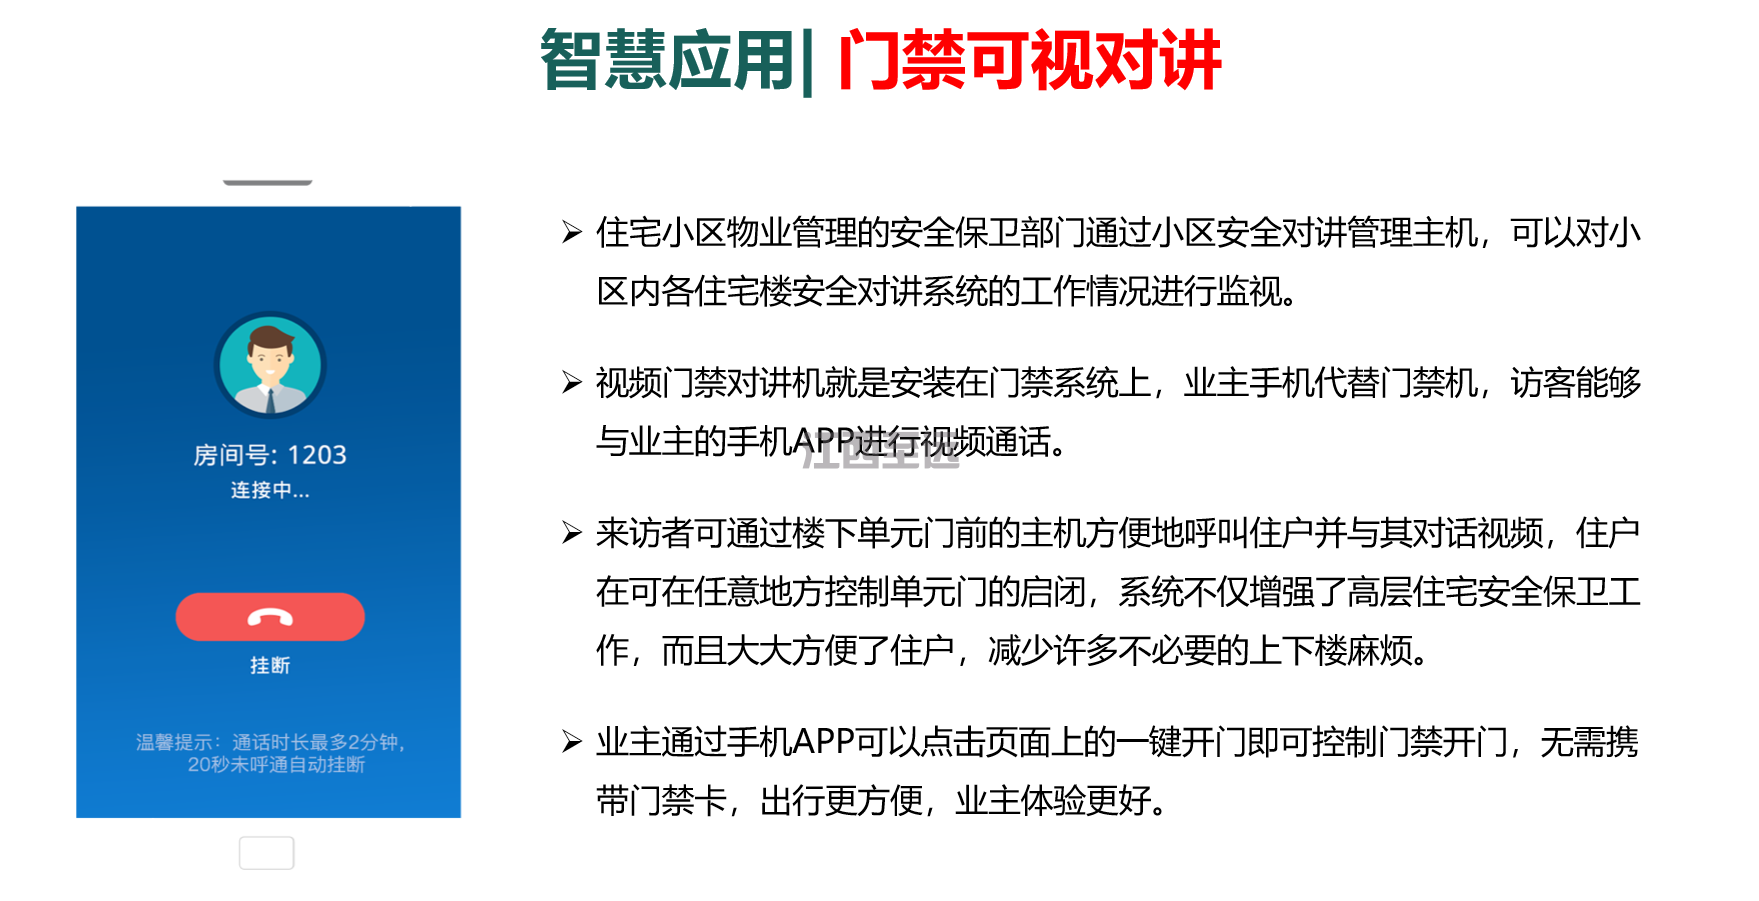 江西至遠-智慧社區/小(xiǎo)區建設解決方案(圖11)